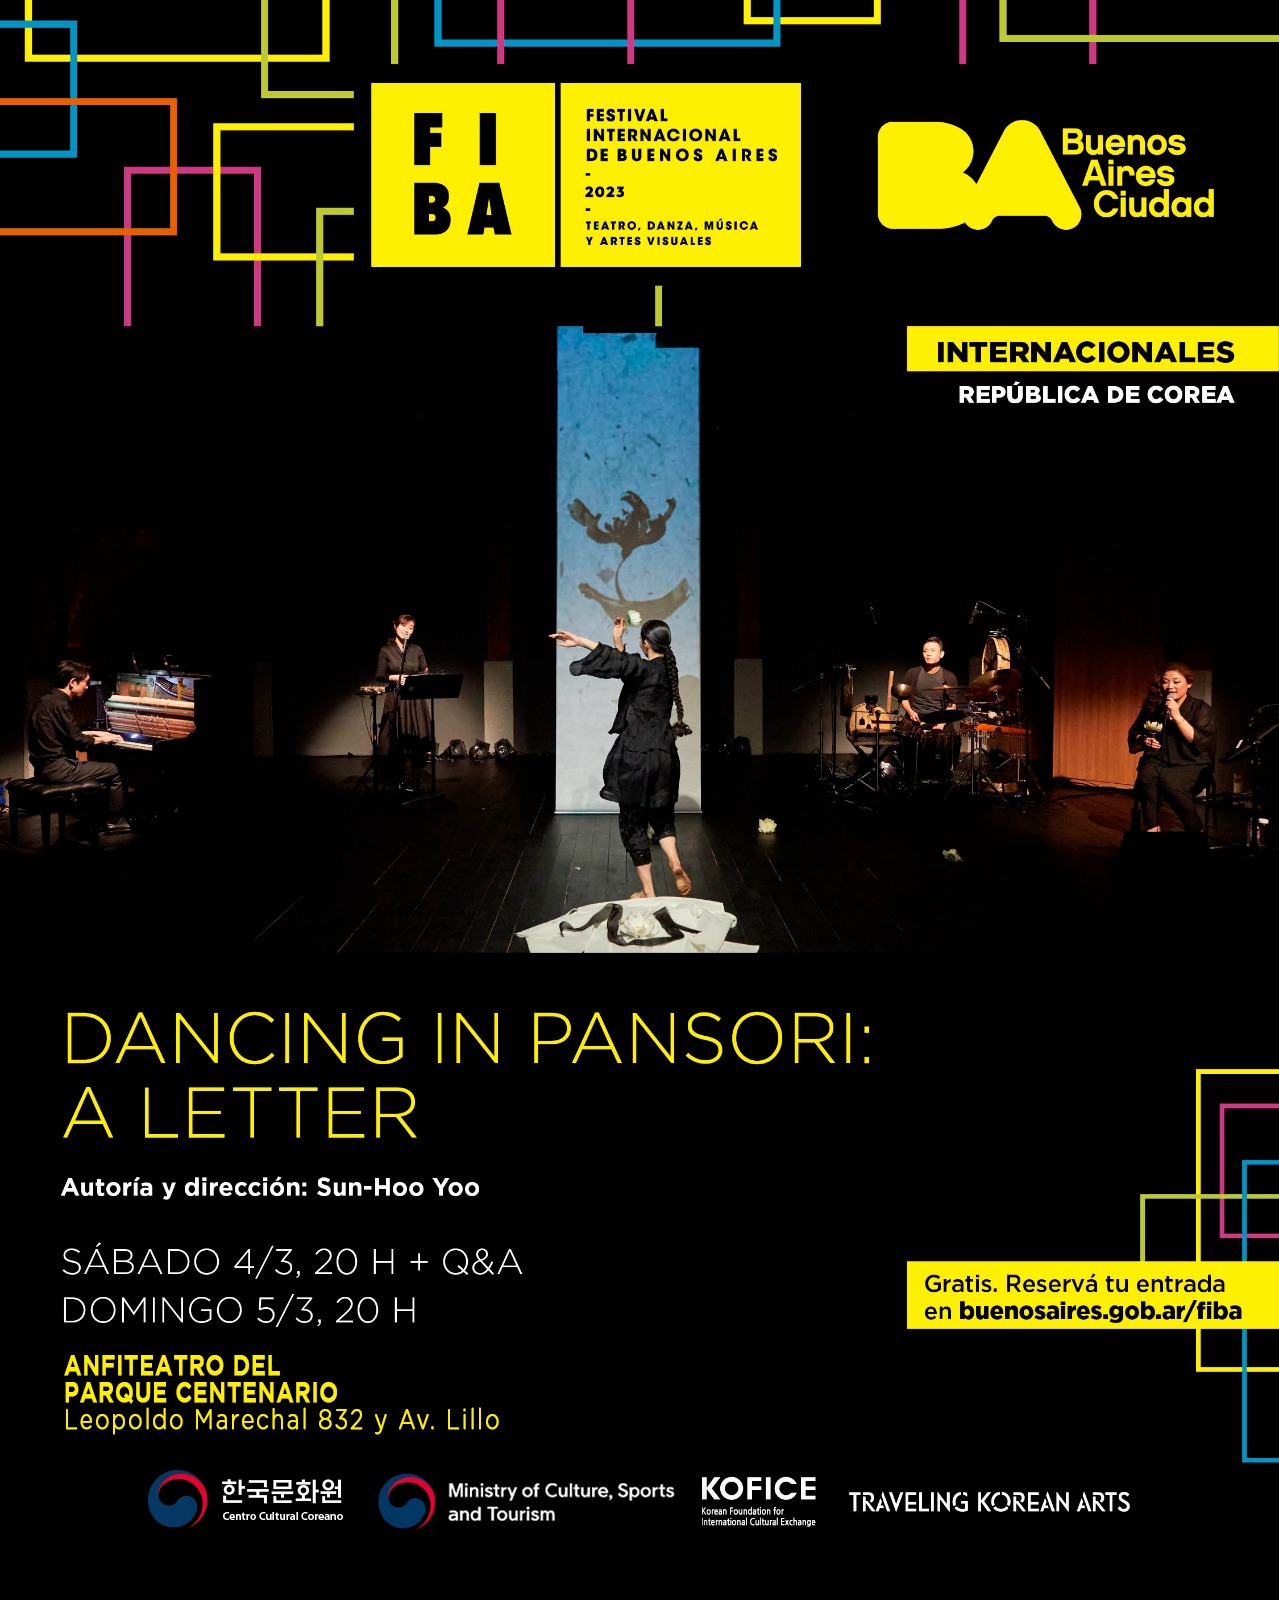 < '춤을 부르는 판소리, 편지(Dancing in Pansori: a letter)'의 공식 포스터 - 출처: 한국문화원 페이스북 계정(@CC.Coreano) >